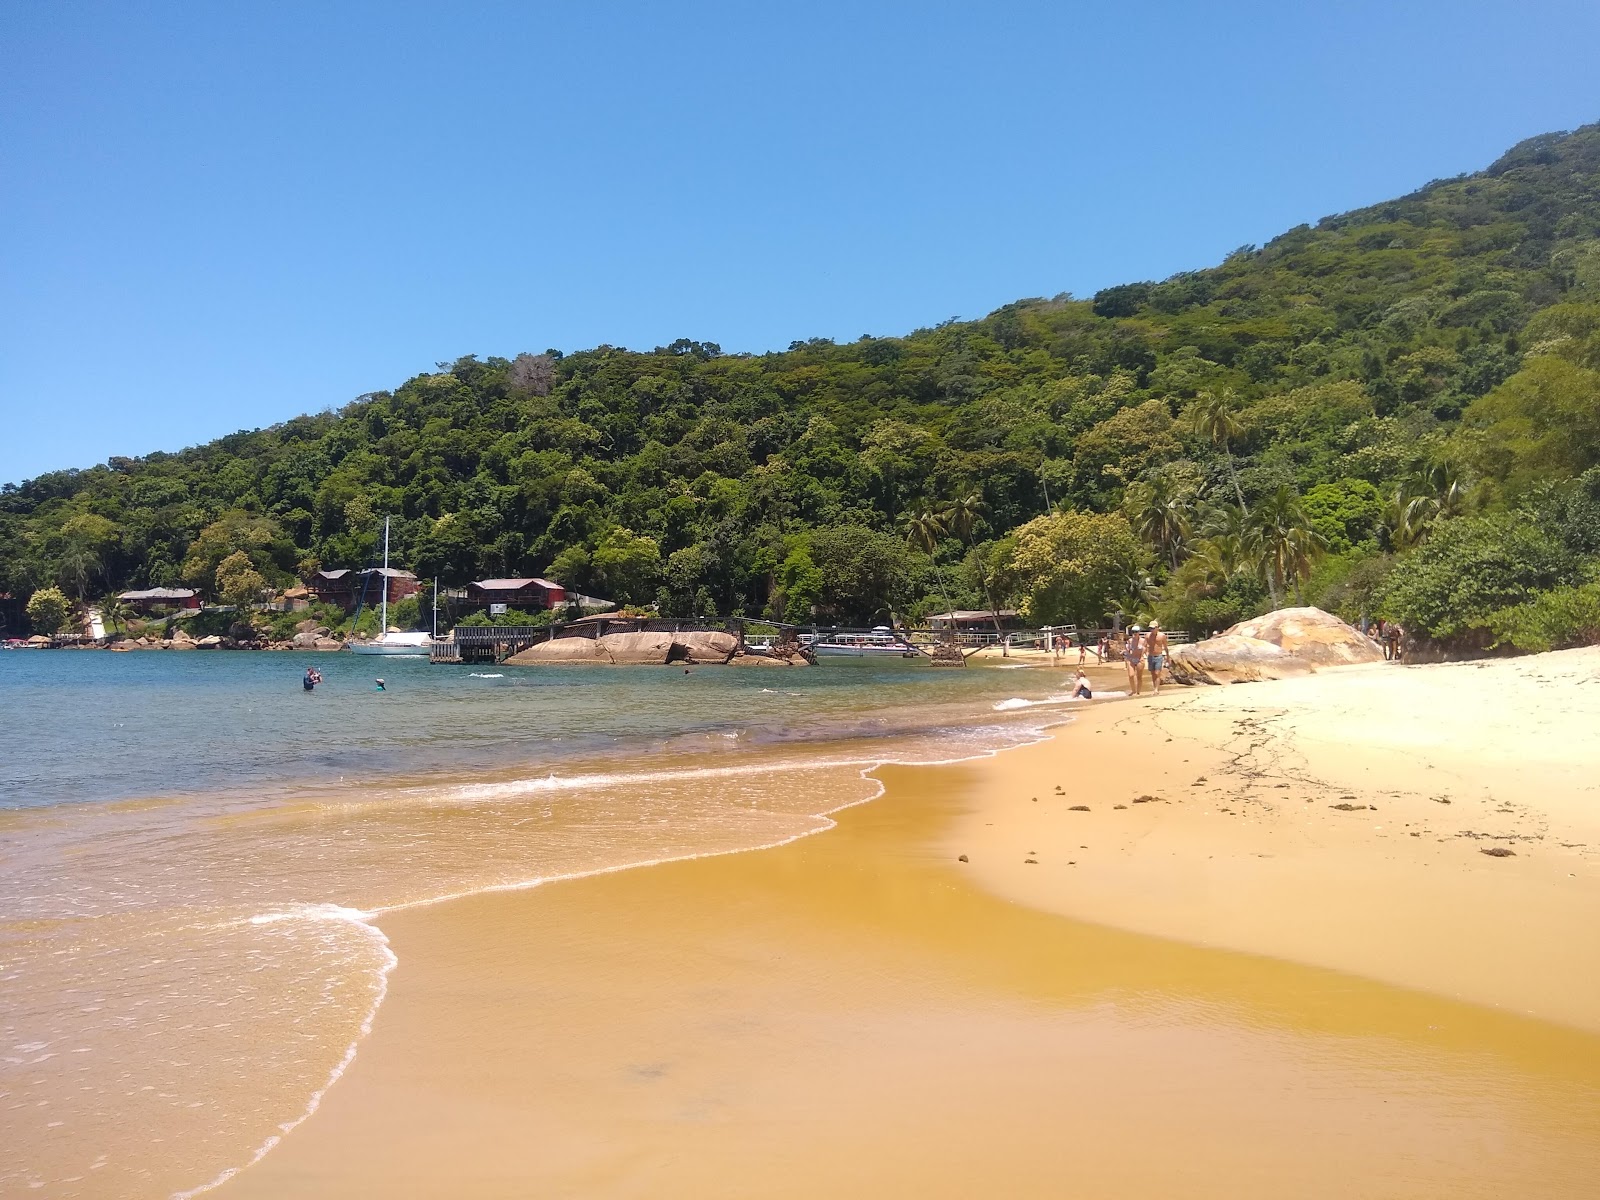 Zdjęcie Praia de Camiranga - popularne miejsce wśród znawców relaksu